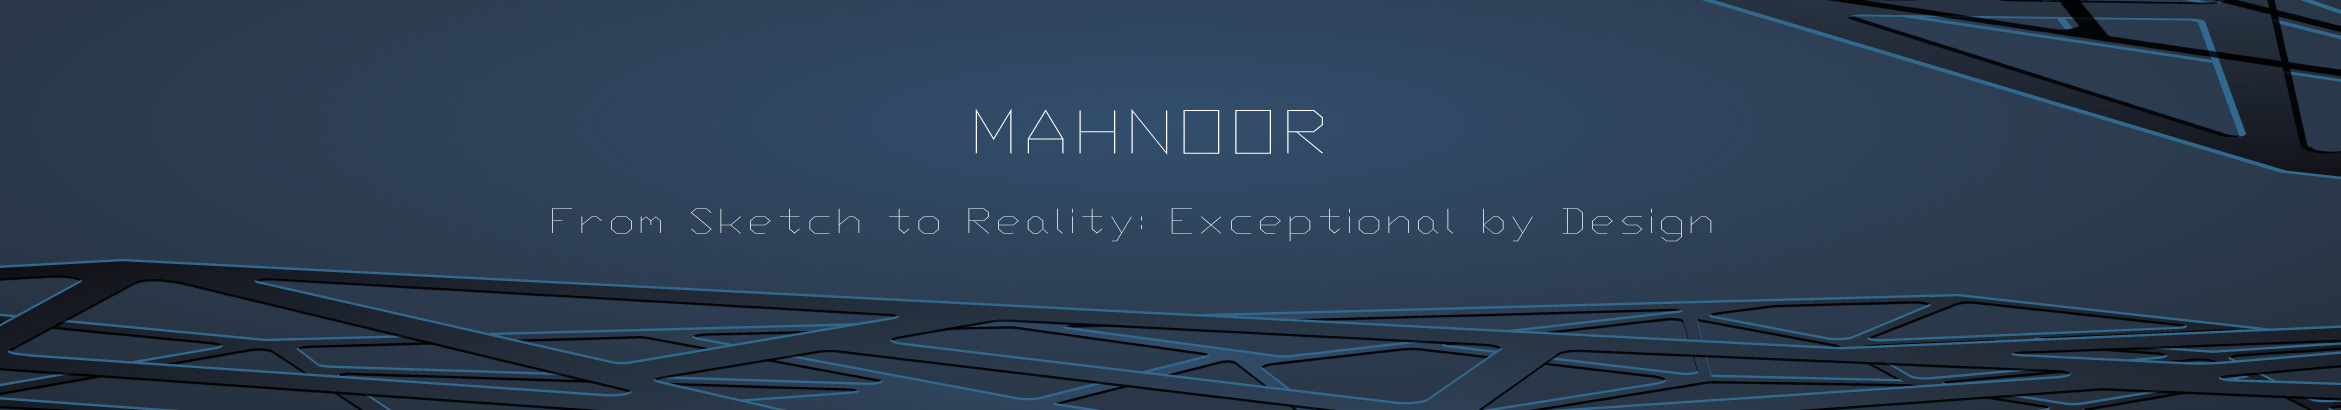 Mahnoor Asif profil başlığı